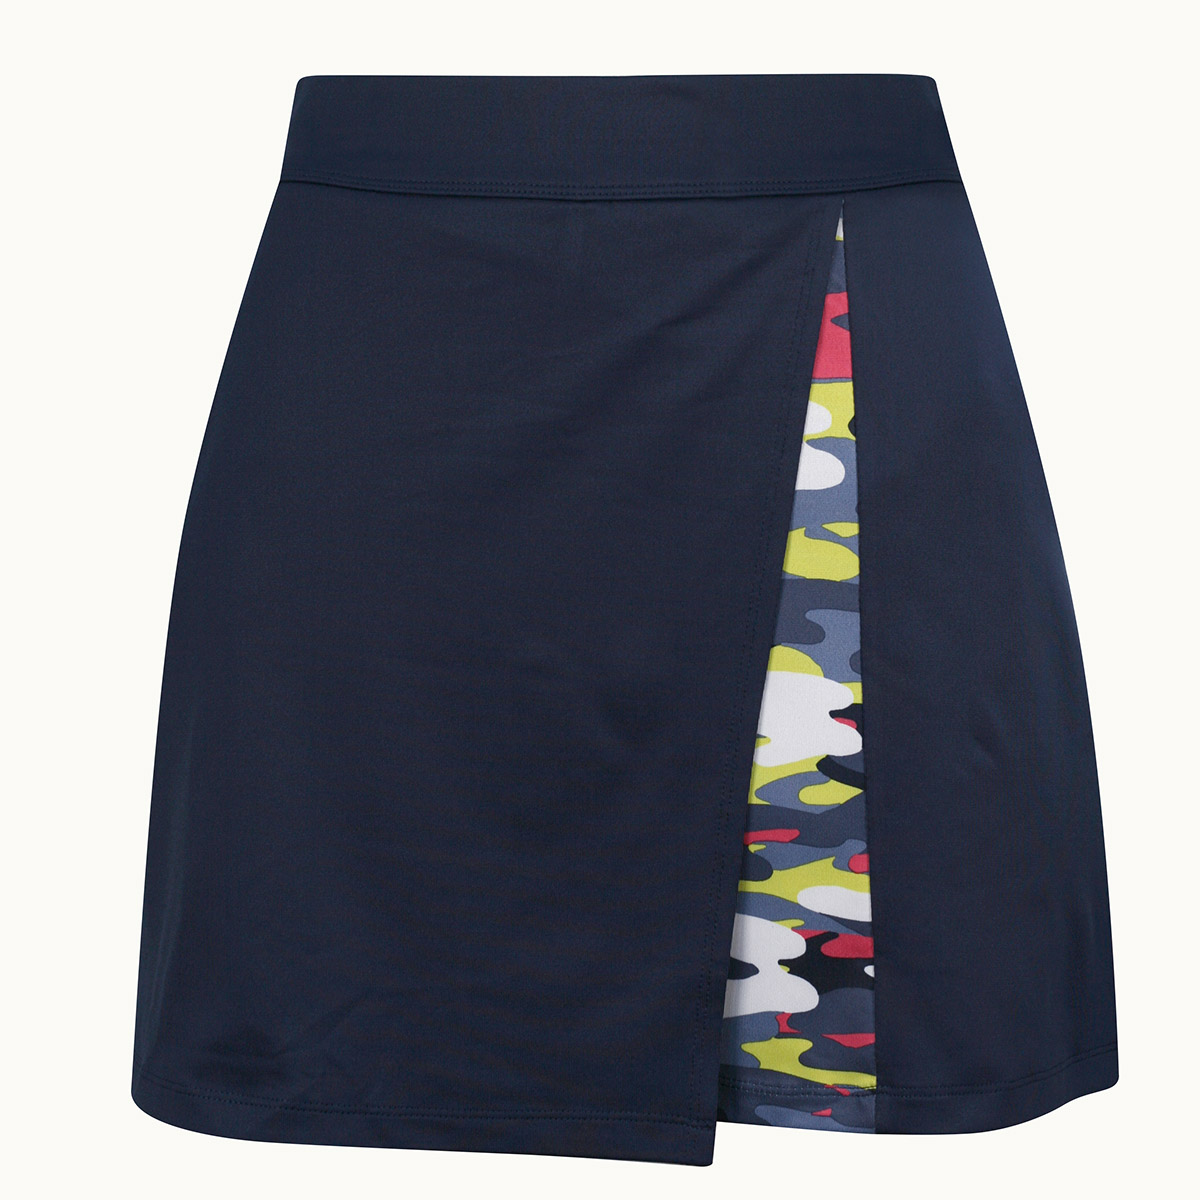 Callaway Multi-Colour Camo Wrap dámská golfová sukně, tmavě modrá, vel. M